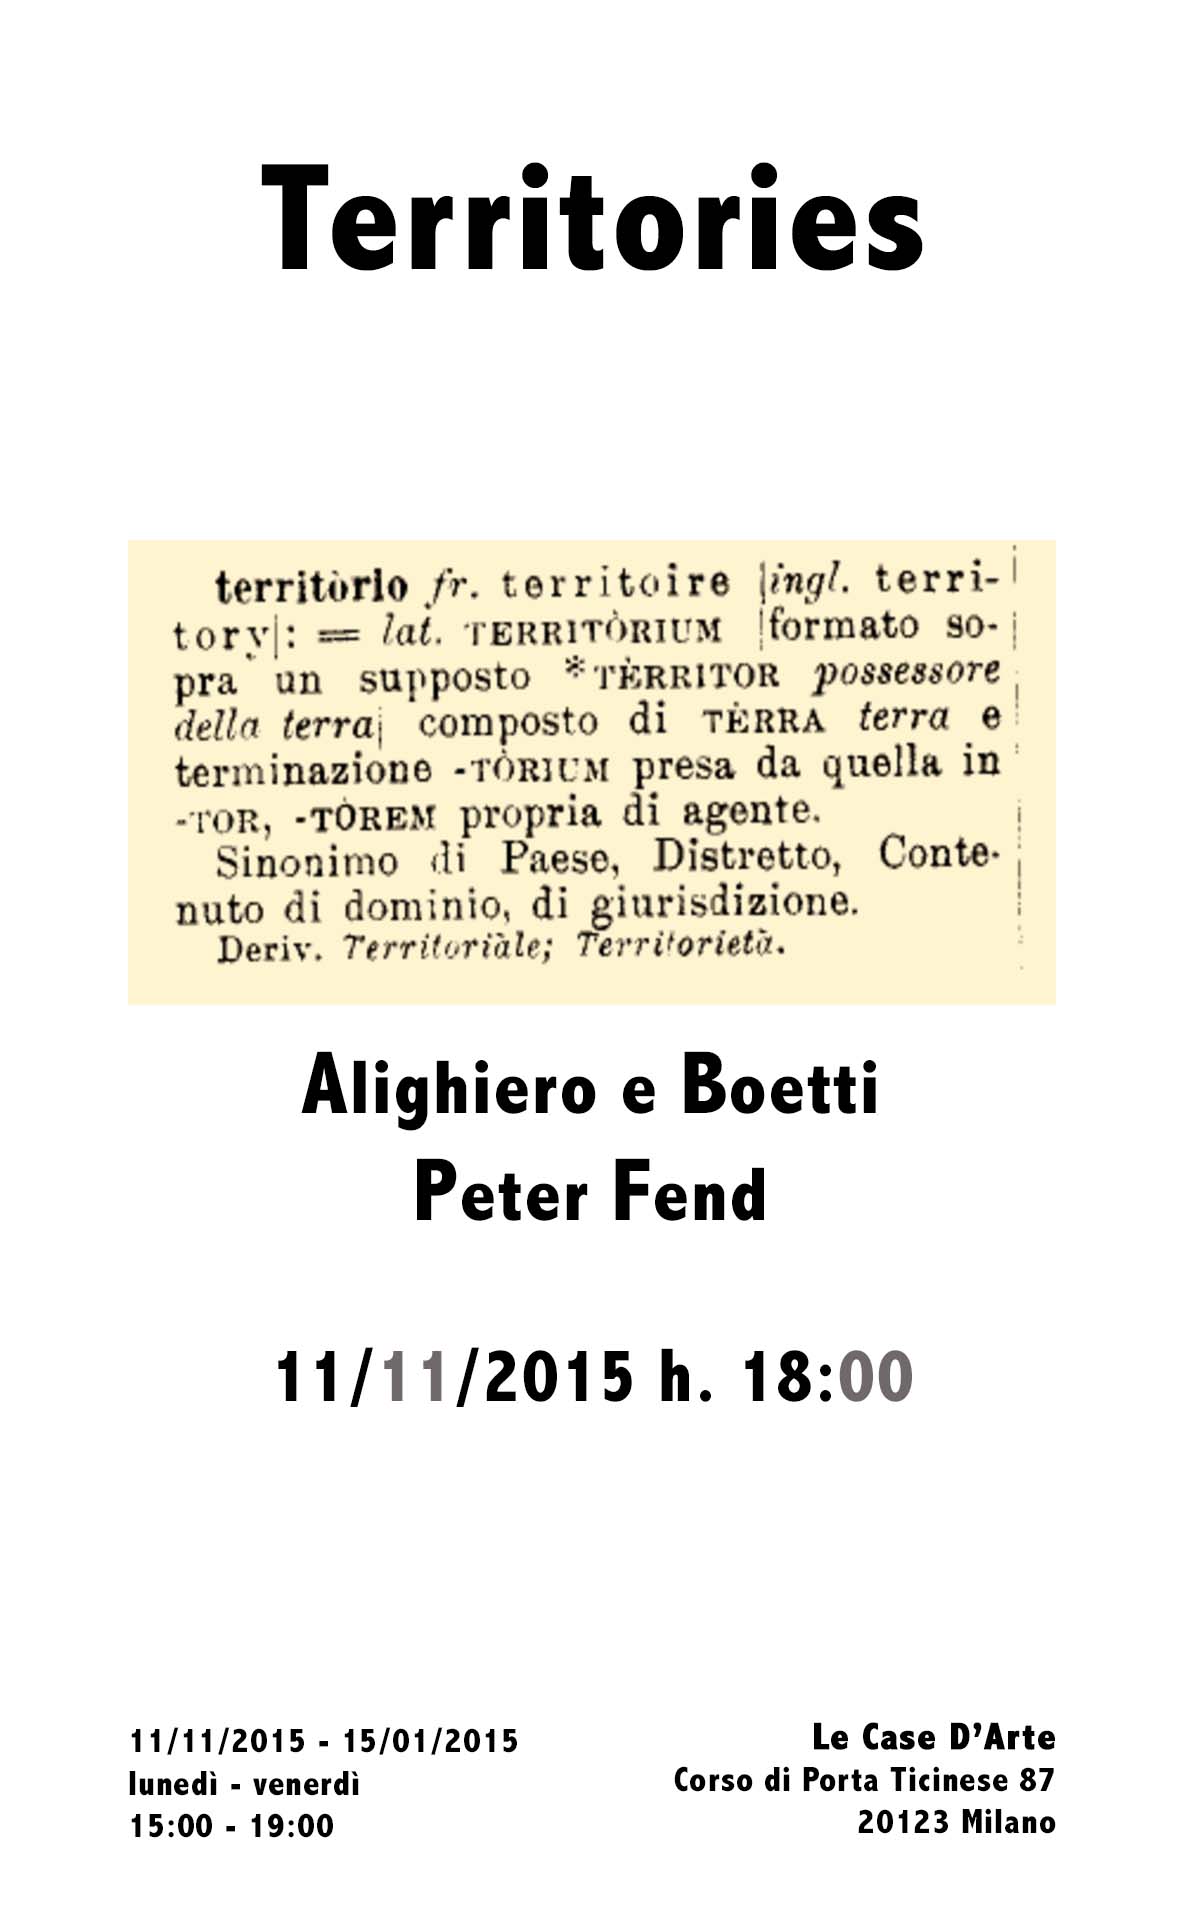 Alighiero e Boetti / Peter Fend - Territories